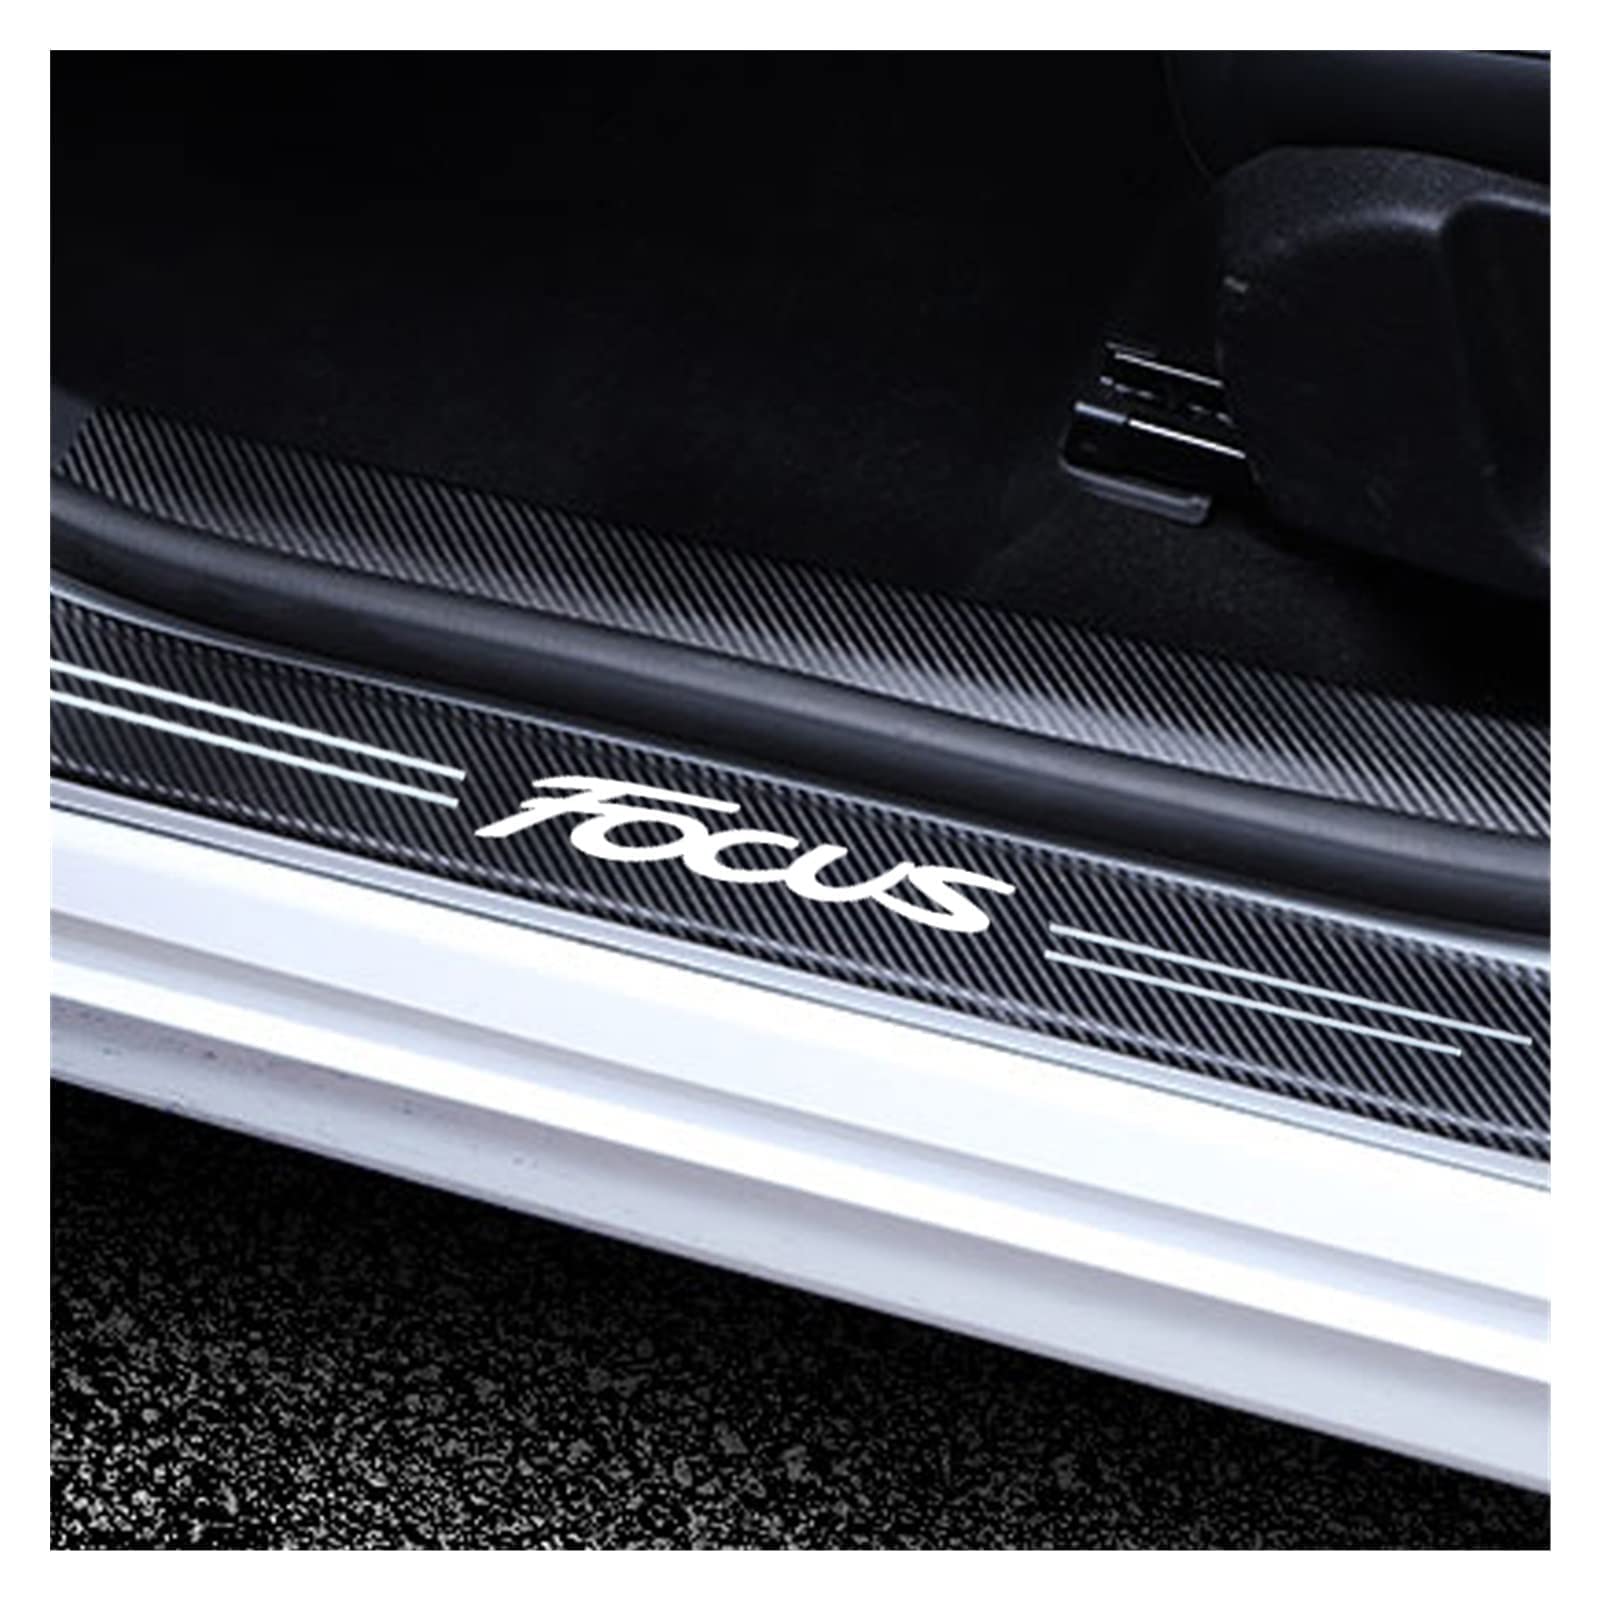 Auto Einstiegsleisten für Fo-rd Focus Tuning Zubehör, 4 Stück Kohlefaser-Türschwellen Aufkleber, Kratzfestes und Verschleißfestes - Innen-Styling-Zubehör,Black von YUPACK